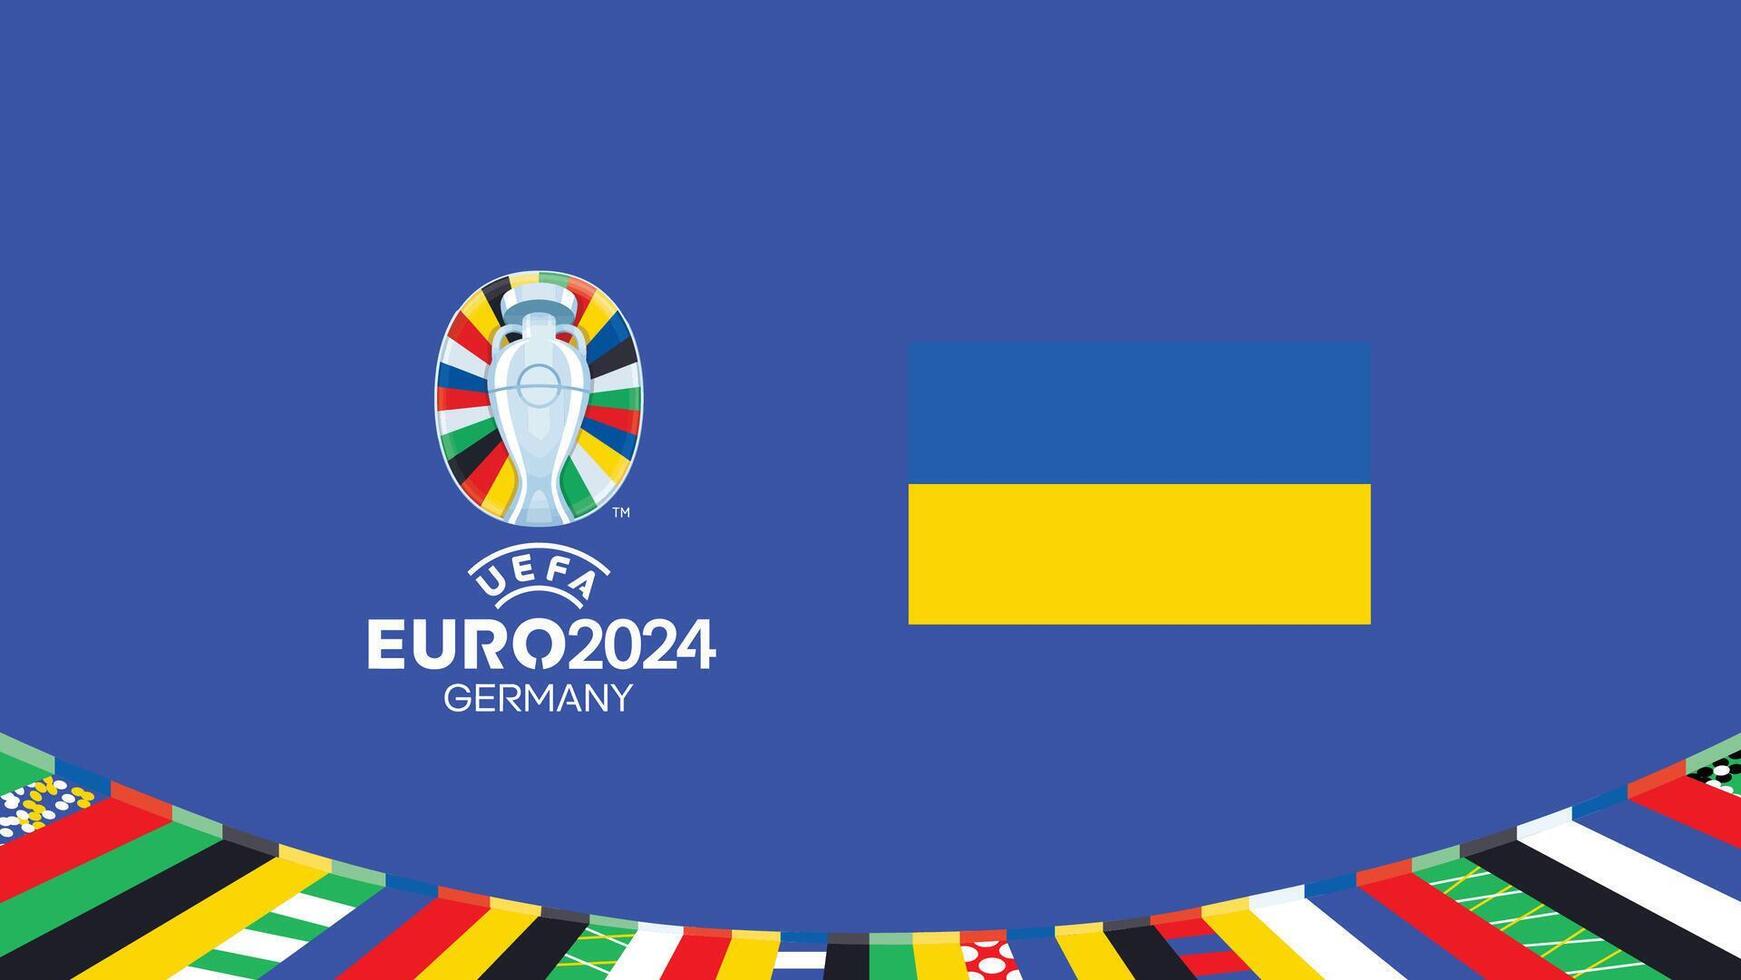 euro 2024 Oekraïne vlag embleem teams ontwerp met officieel symbool logo abstract landen Europese Amerikaans voetbal illustratie vector